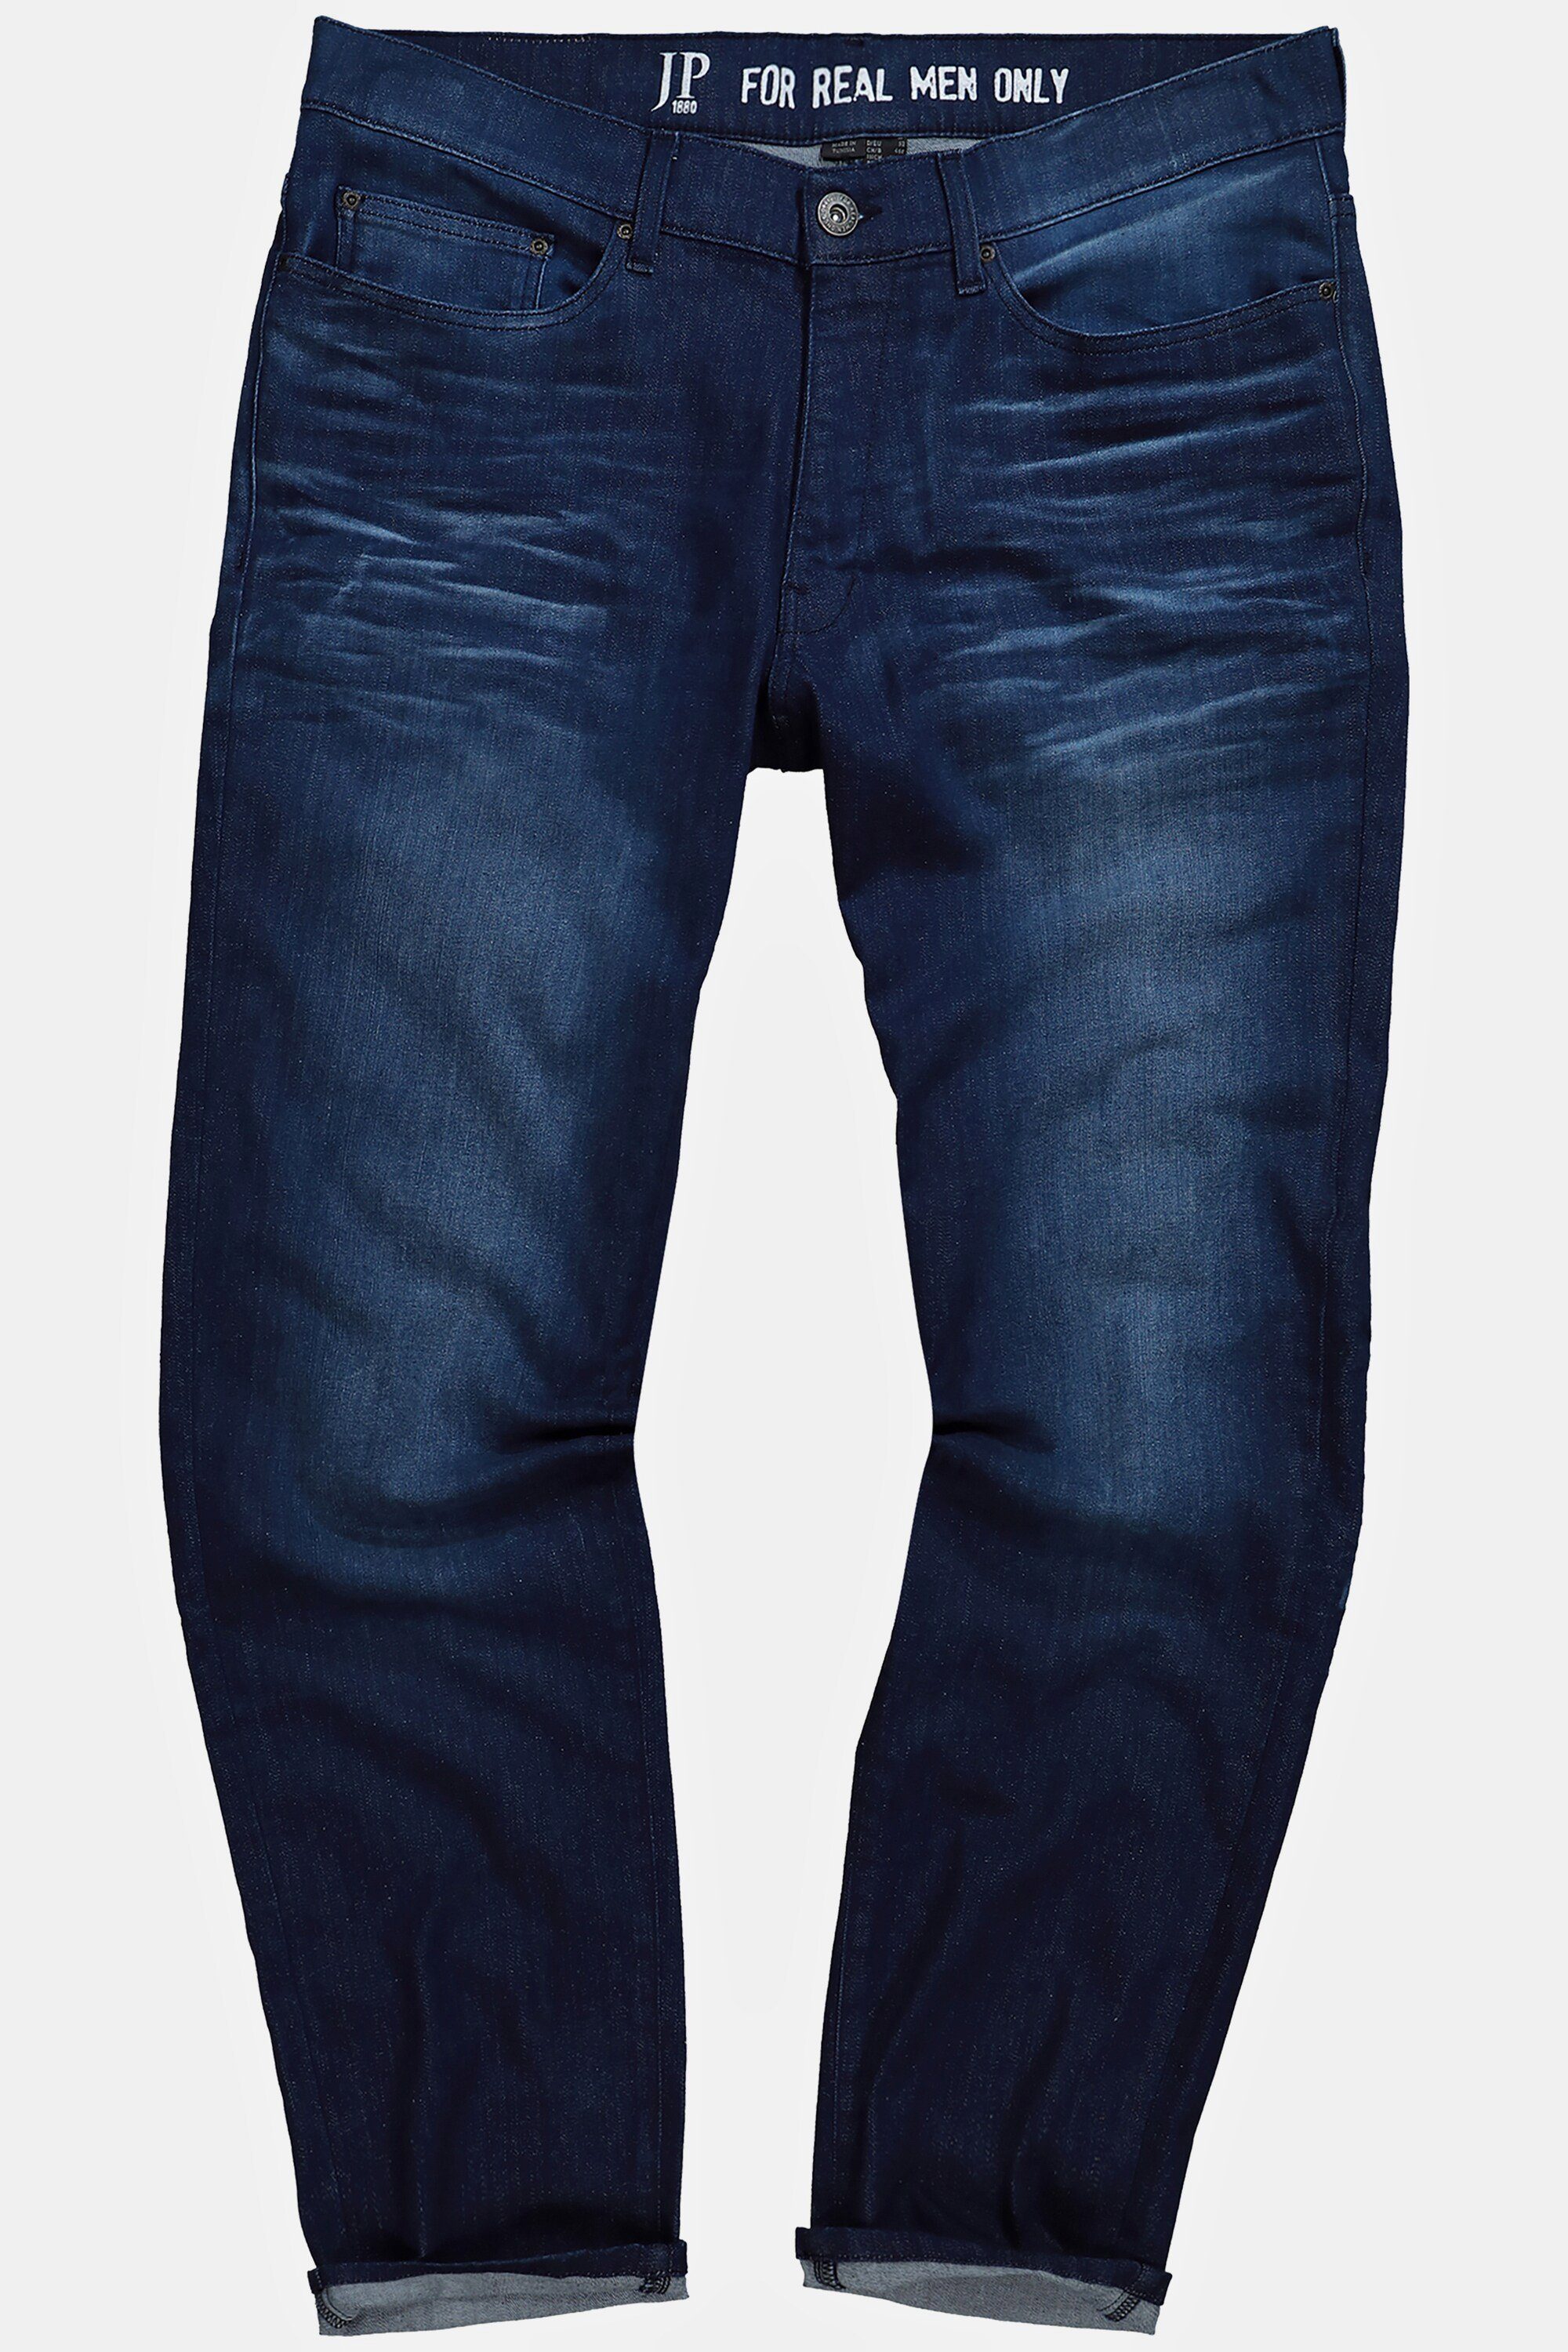 JP1880 Look denim Loose Fit Jeans blue 5-Pocket-Jeans Vintage Tapered Denim